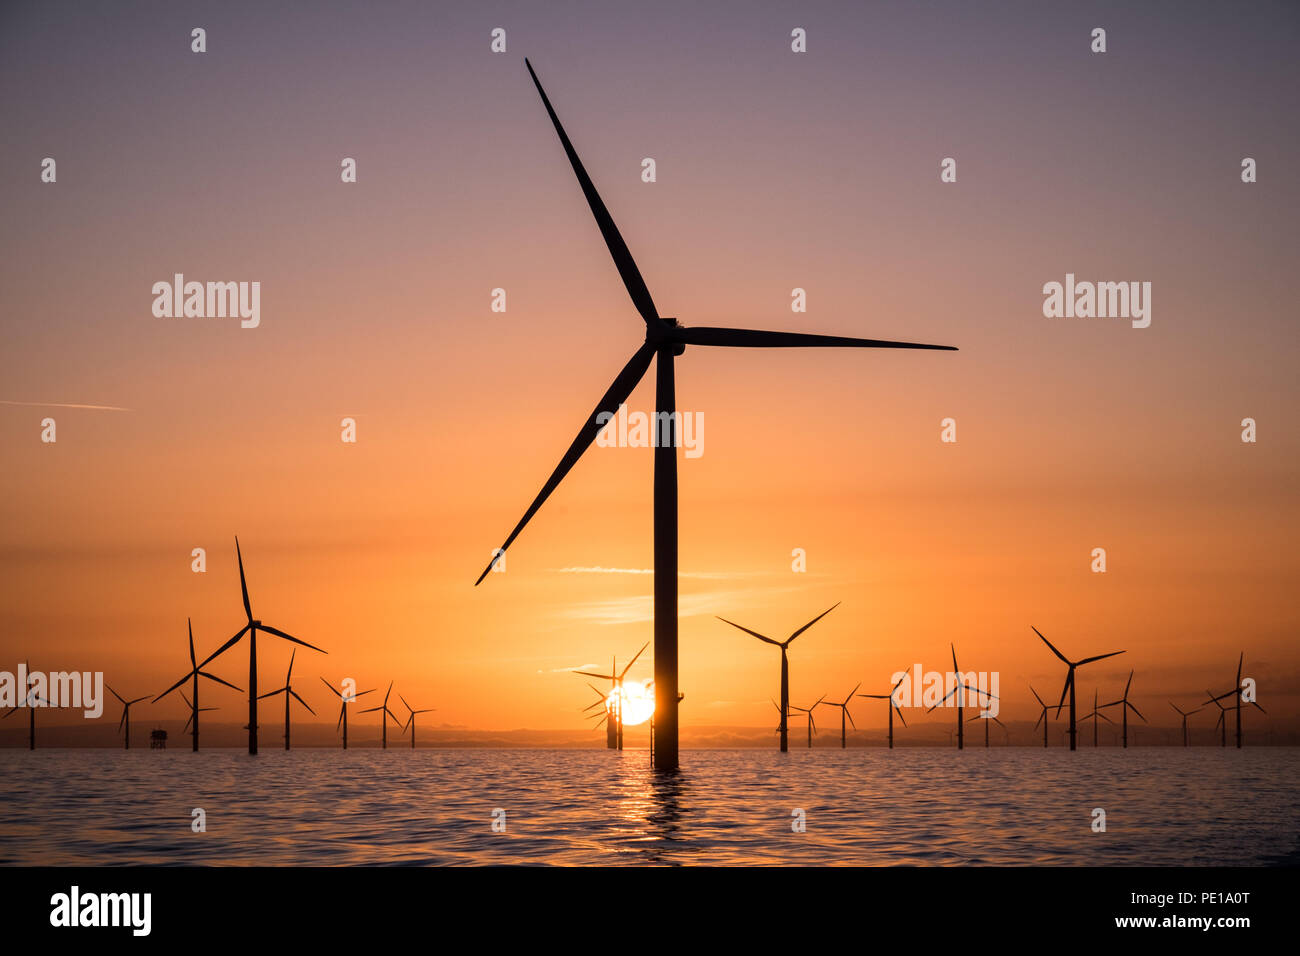 Les éoliennes du parc éolien offshore Walney dans la mer d'Irlande au lever du soleil Banque D'Images